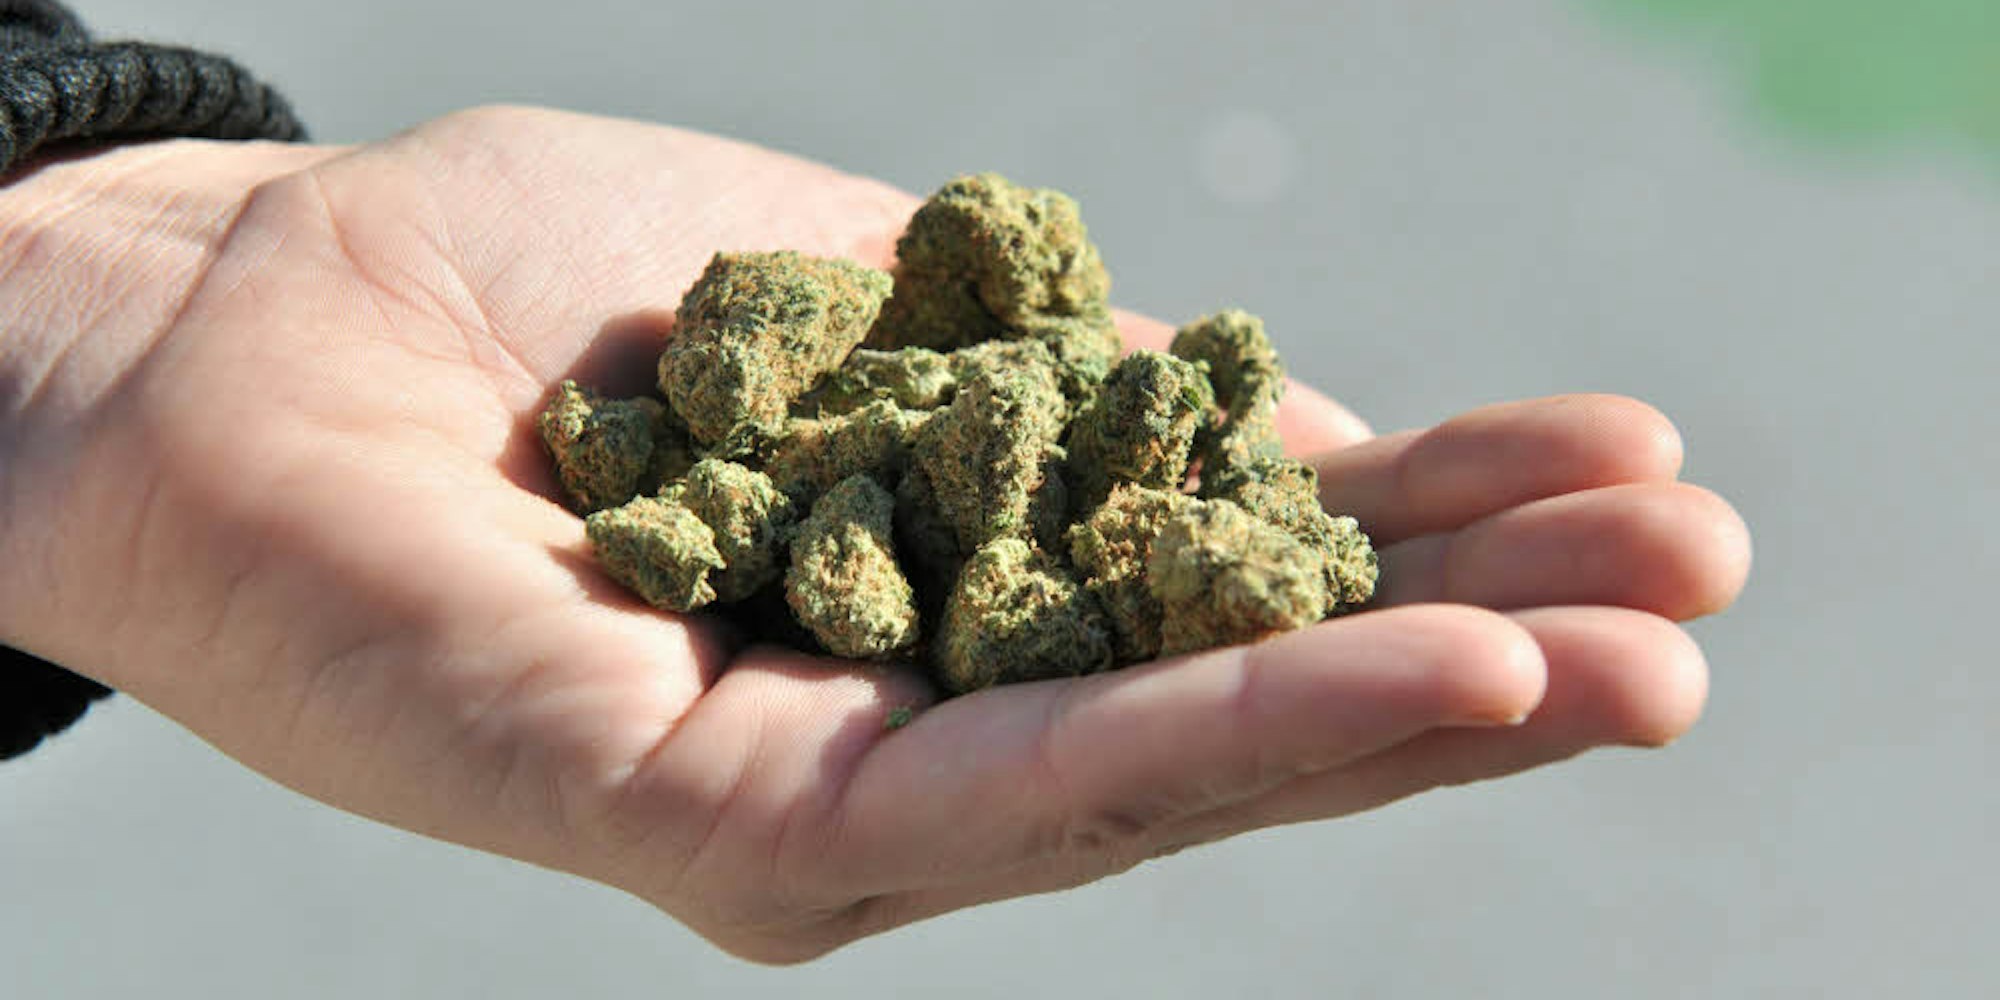 Cannabisblüten – für viele eine sinnvolle Ergänzung zu herkömmlichen pharmazeutischen Produkten.